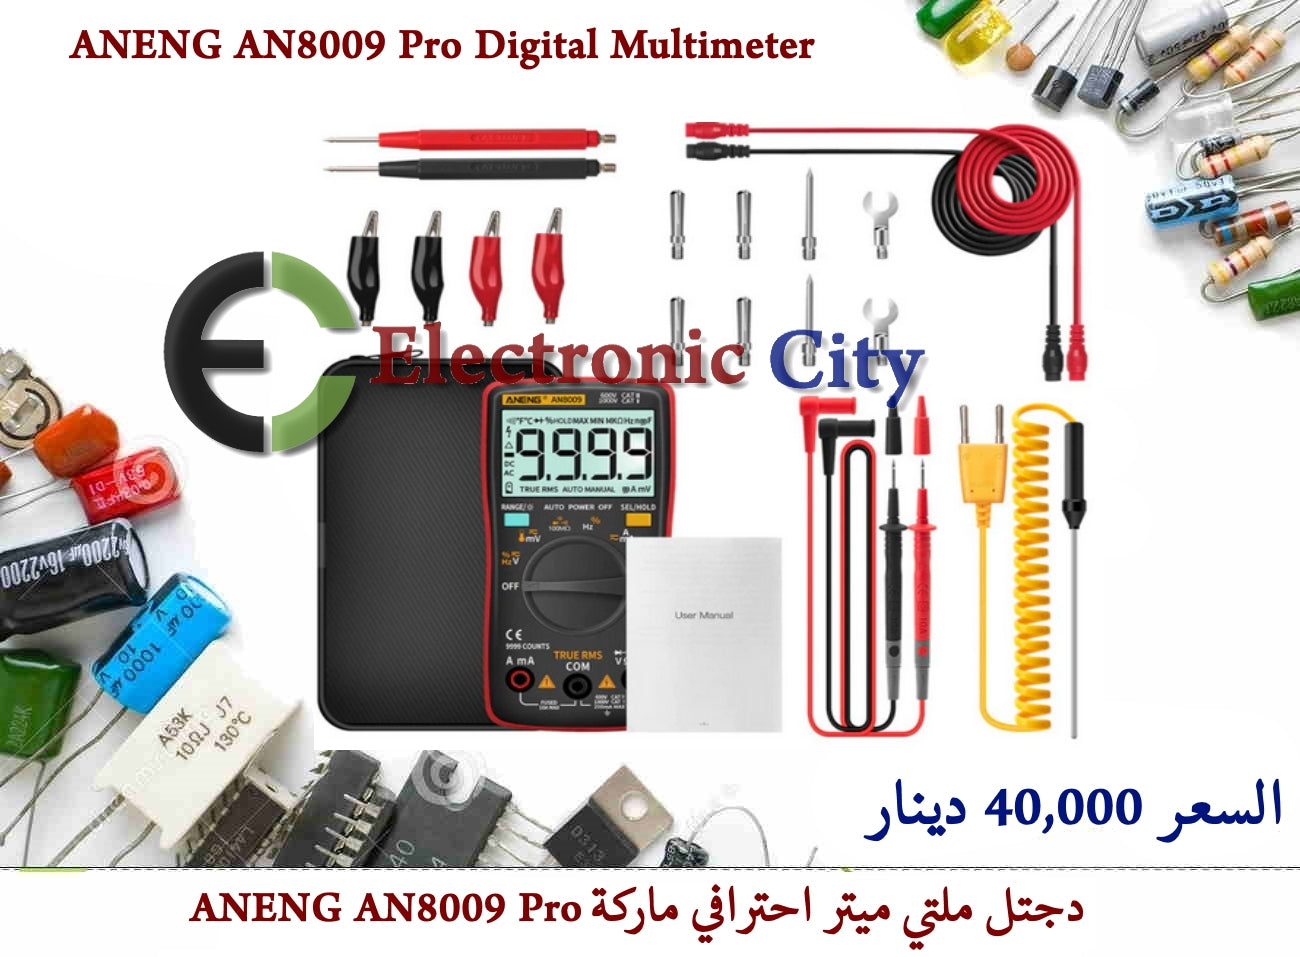 ANENG AN8009 Pro Digital Multimeter #GG. 11316